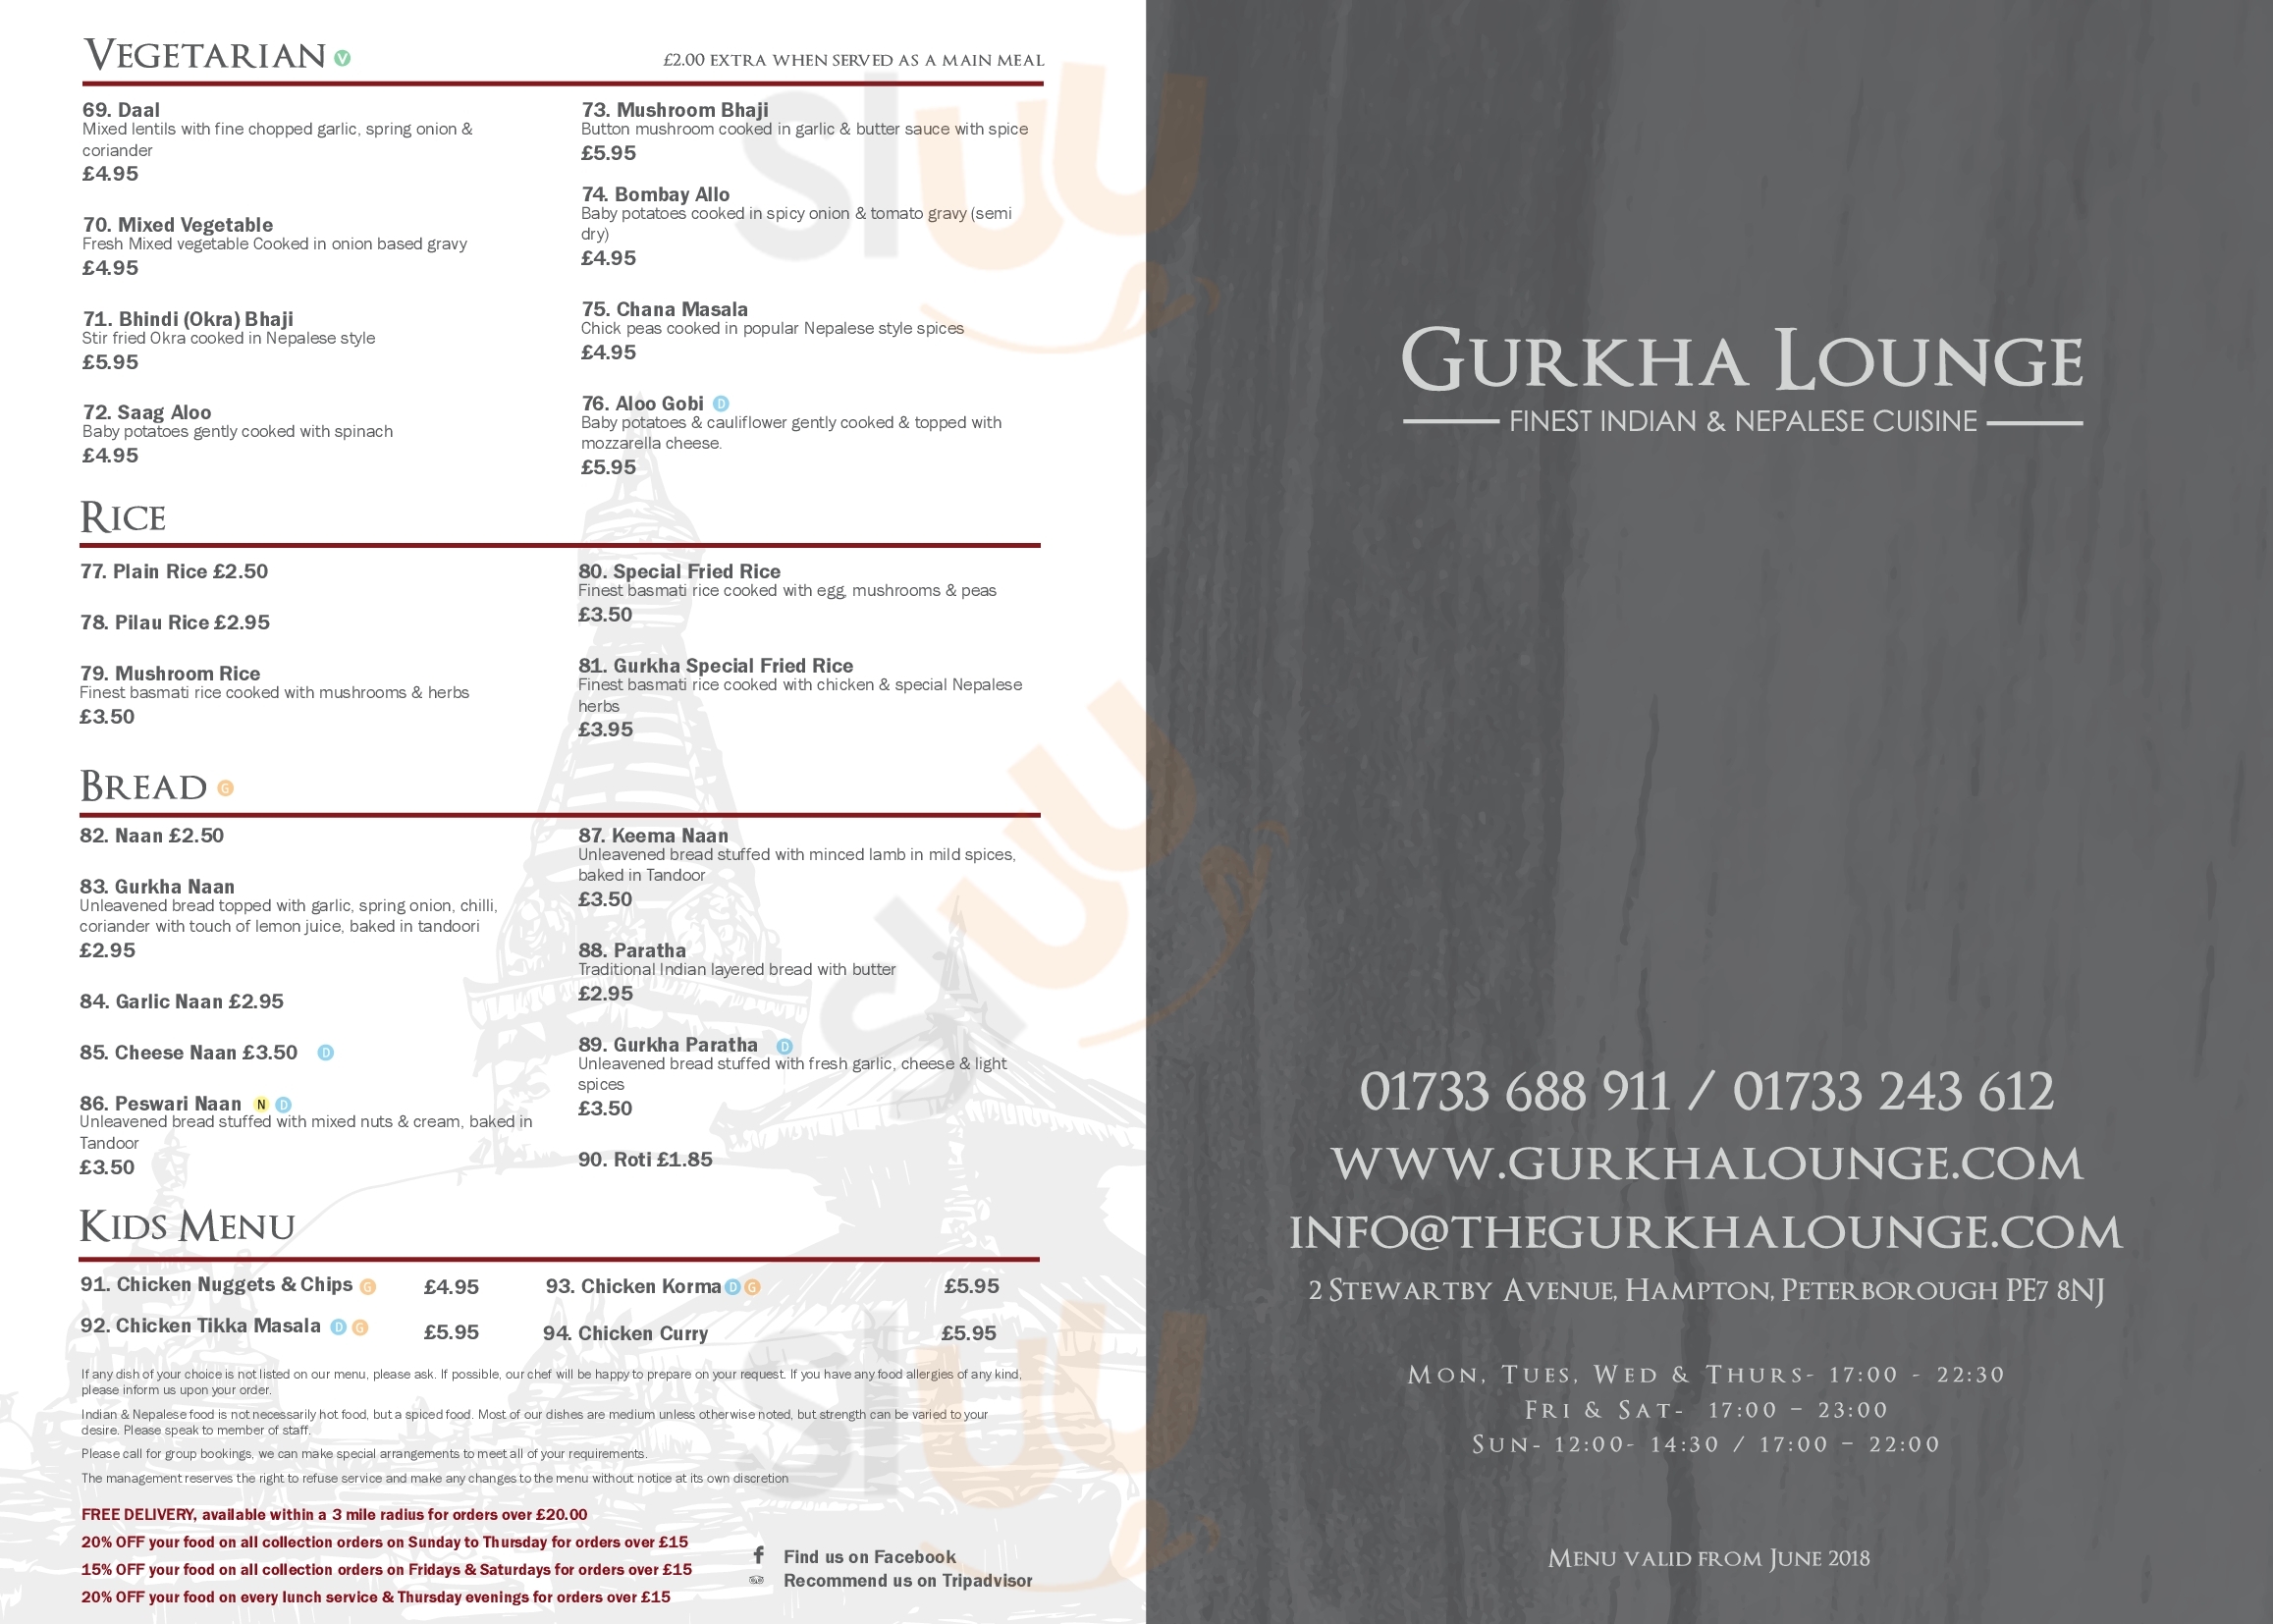 Gurkha Lounge - Hampton Peterborough Menu - 1